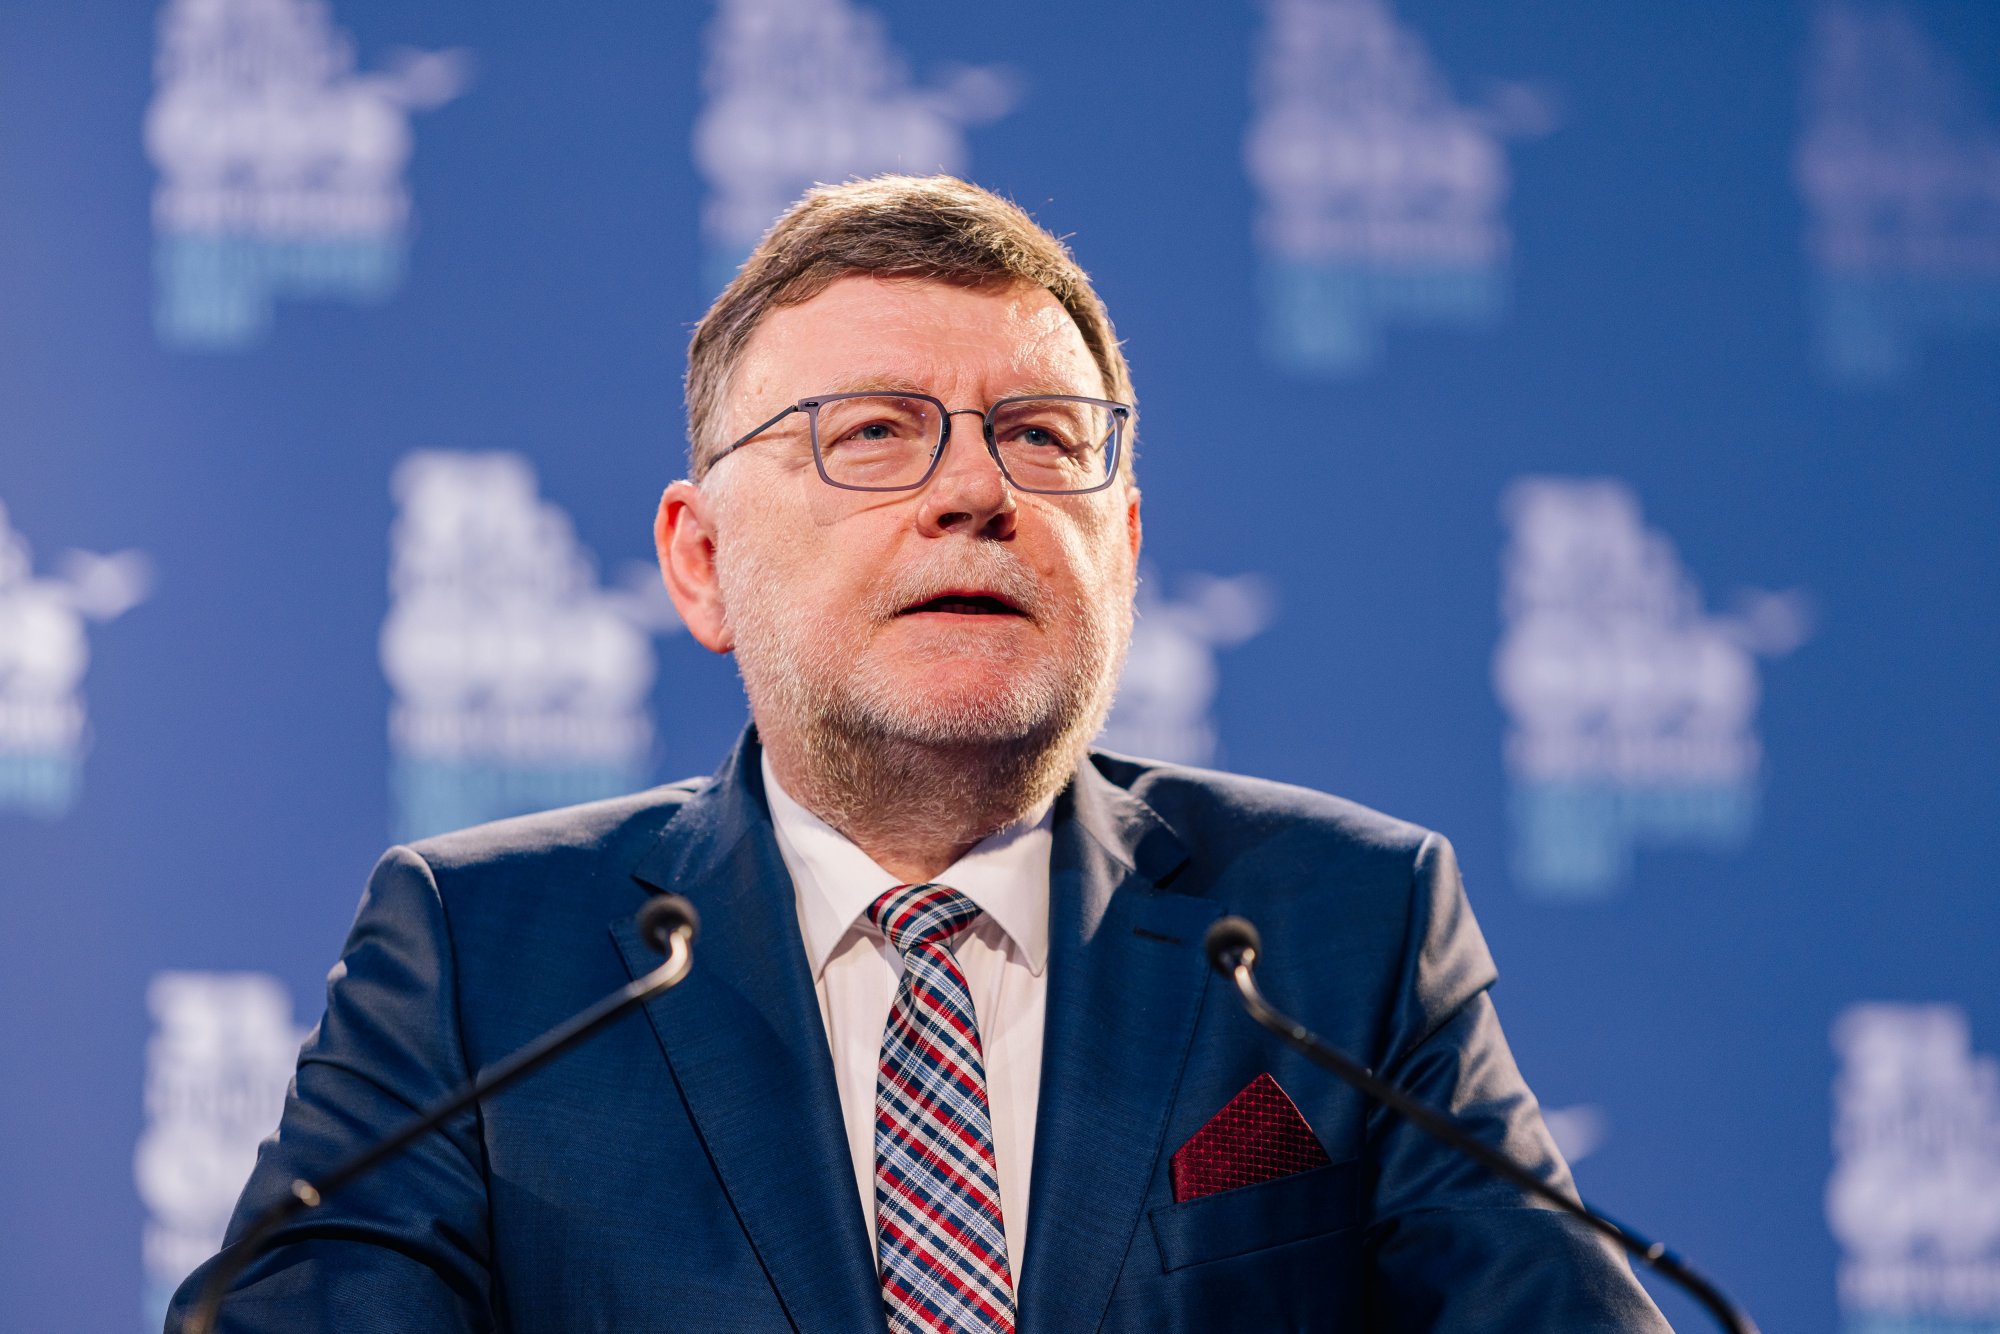 Ministr Stanjura pro Hospodářské noviny: V důchodové reformě bych byl místy odvážnější